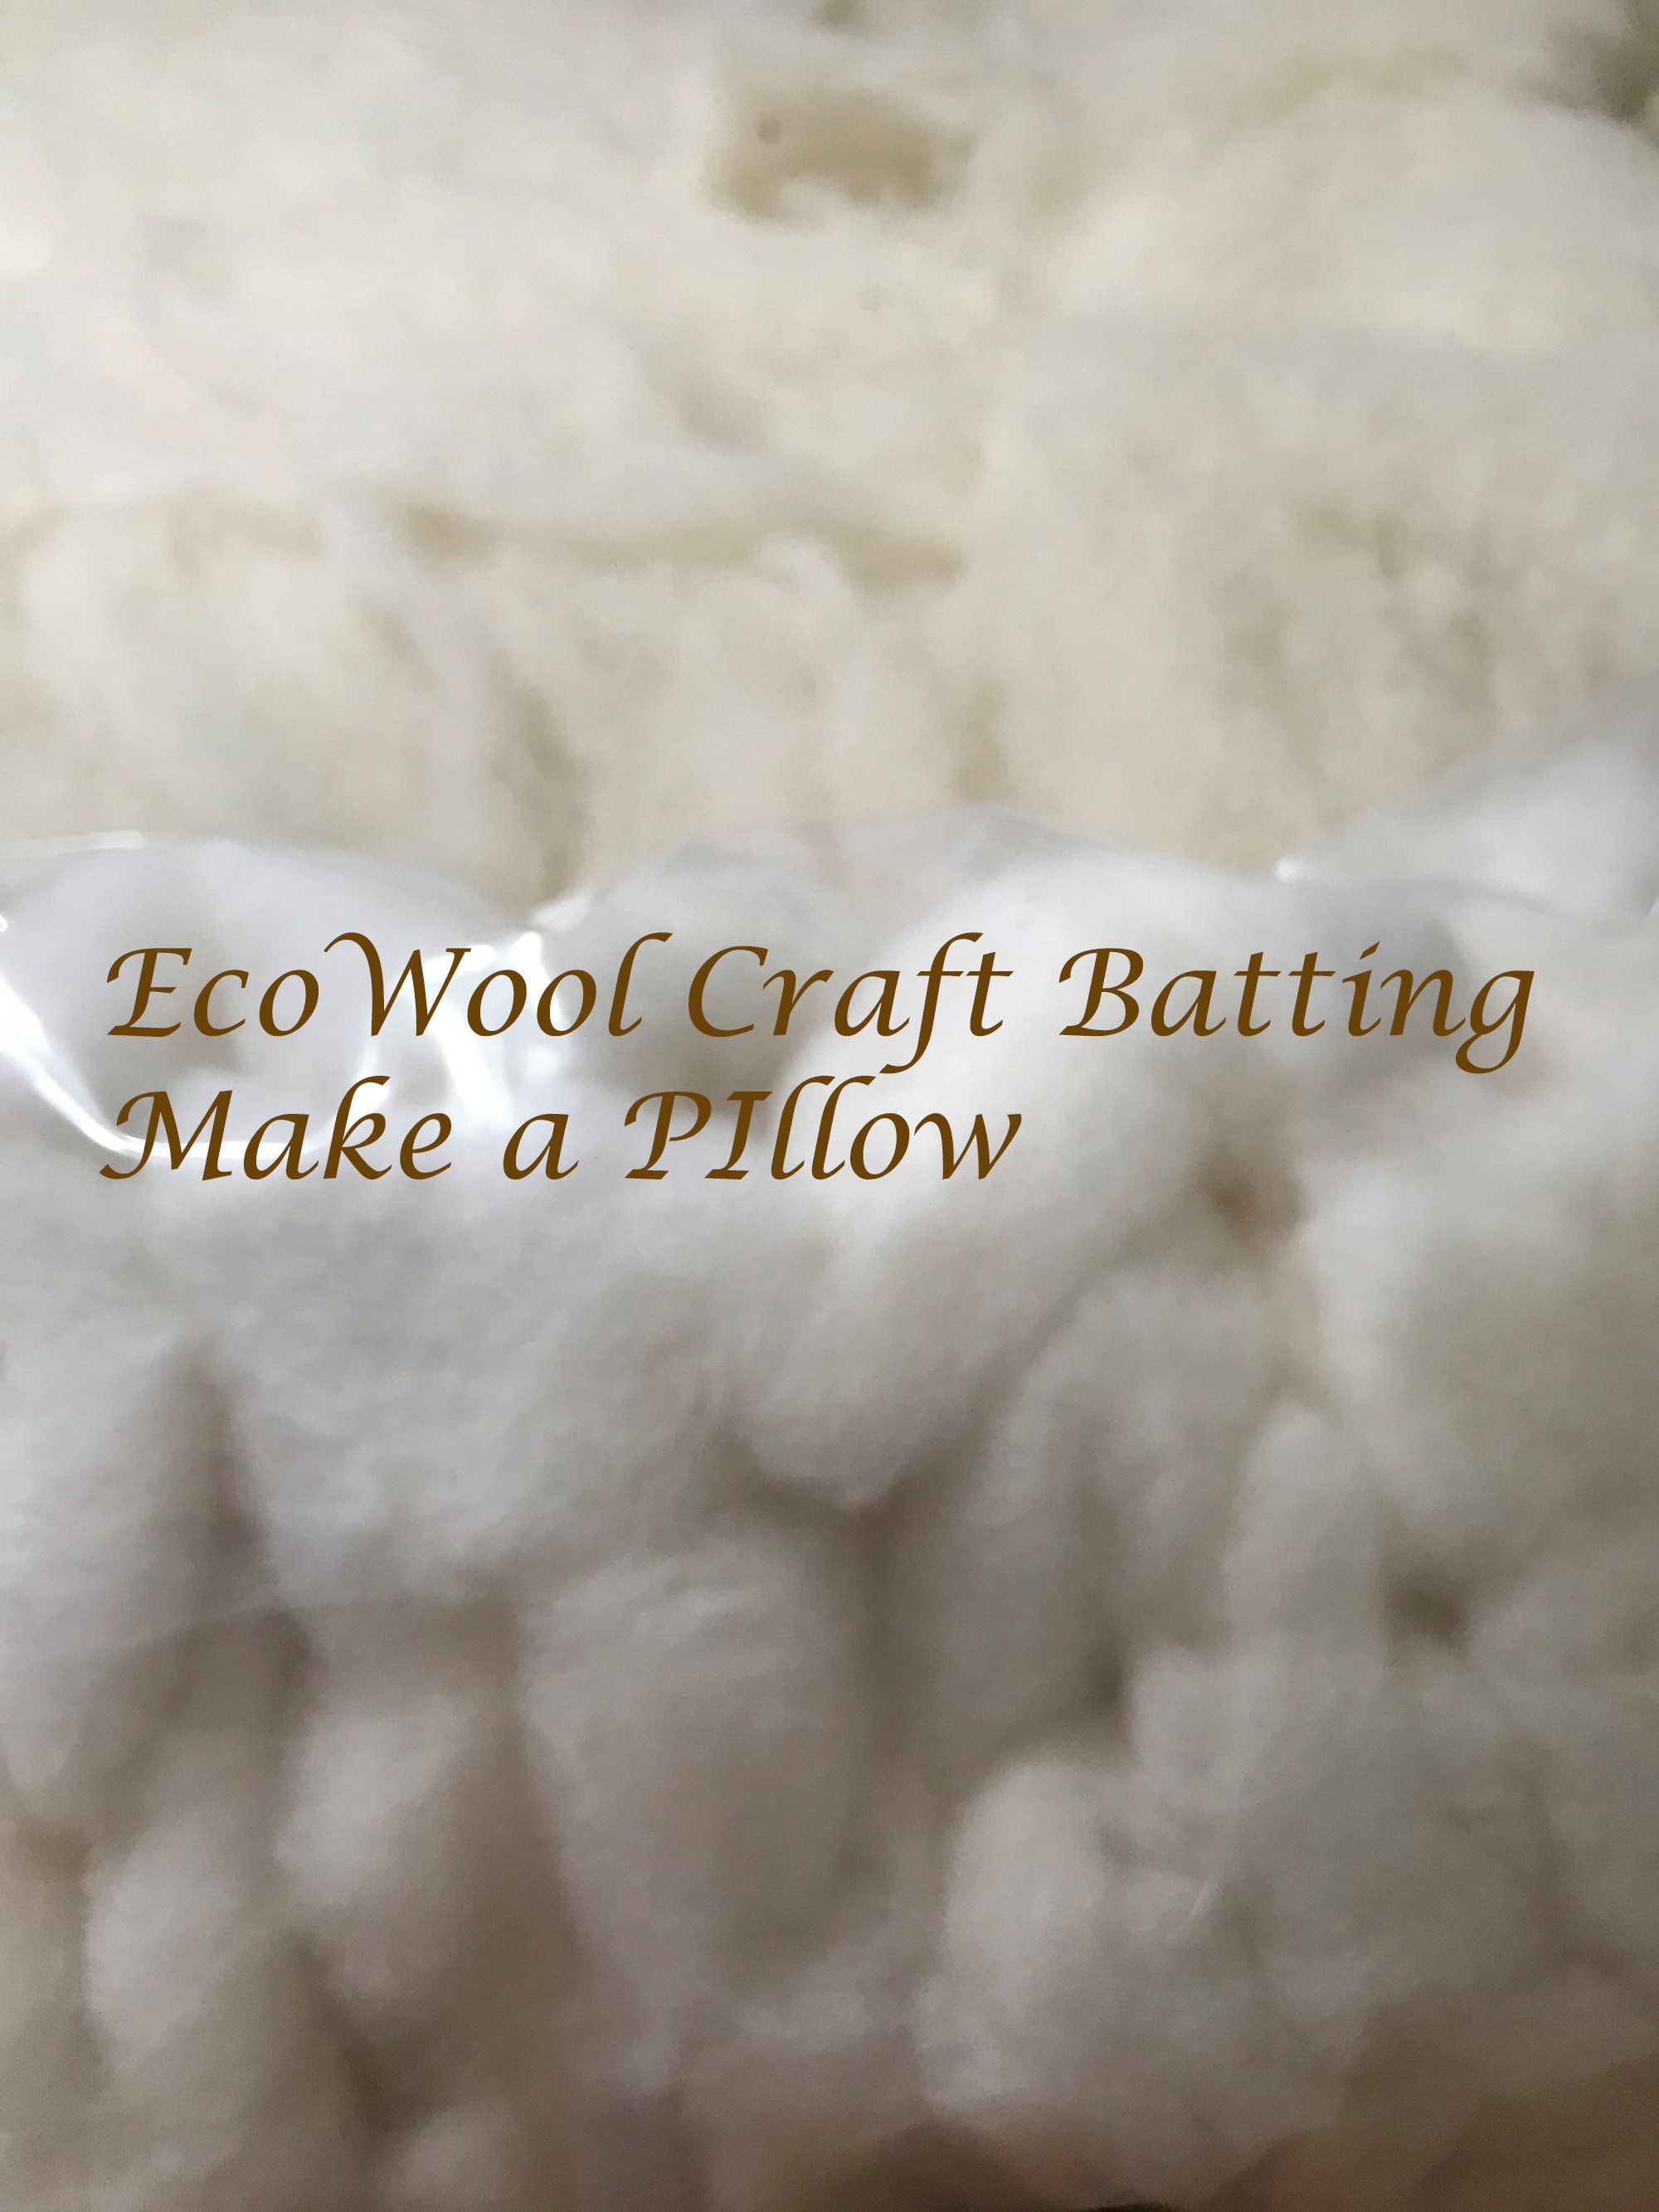 100% Wool Batting Samples, Home of Wool